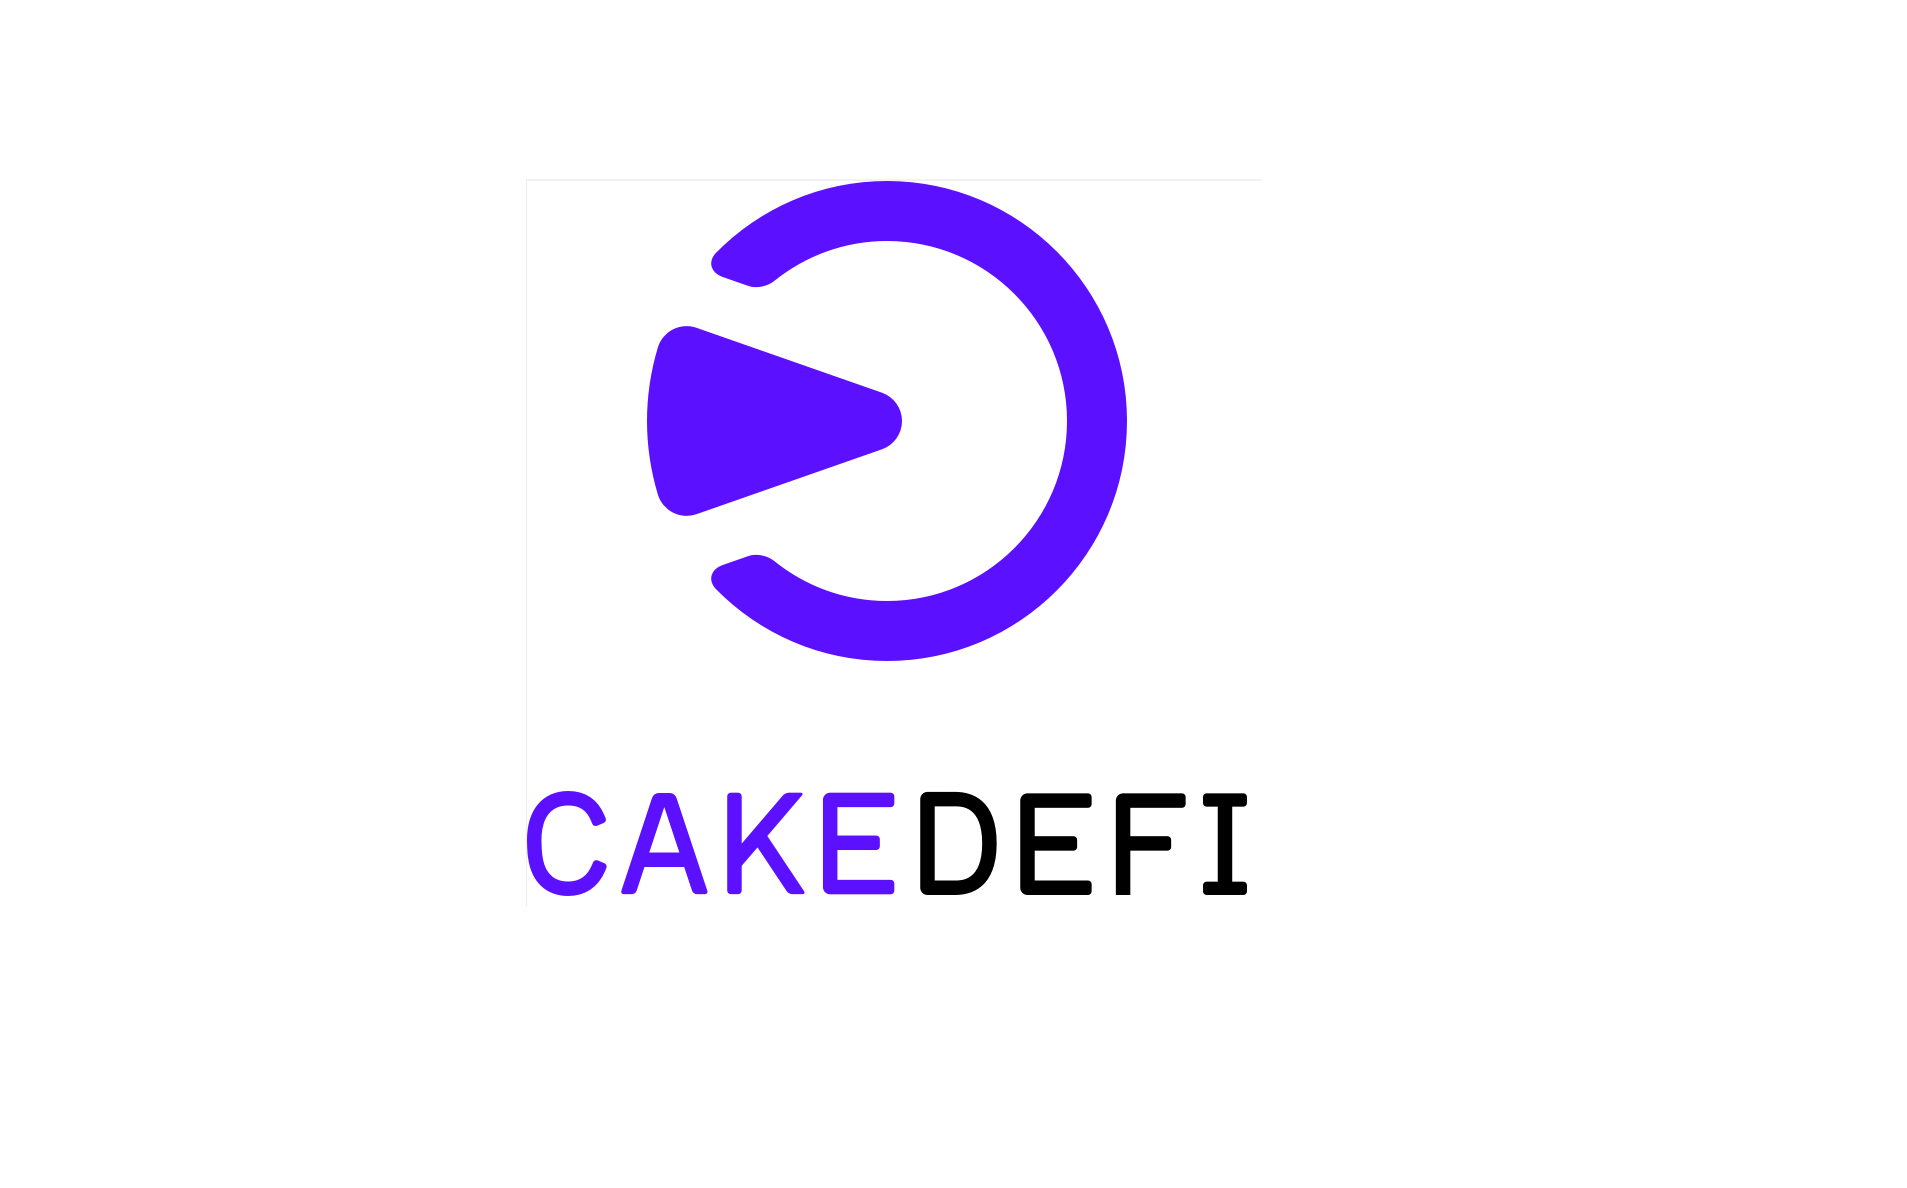 Cake-DeFi-best-tigt-keine-Verbindung-zur-Celsius-Ansteckung